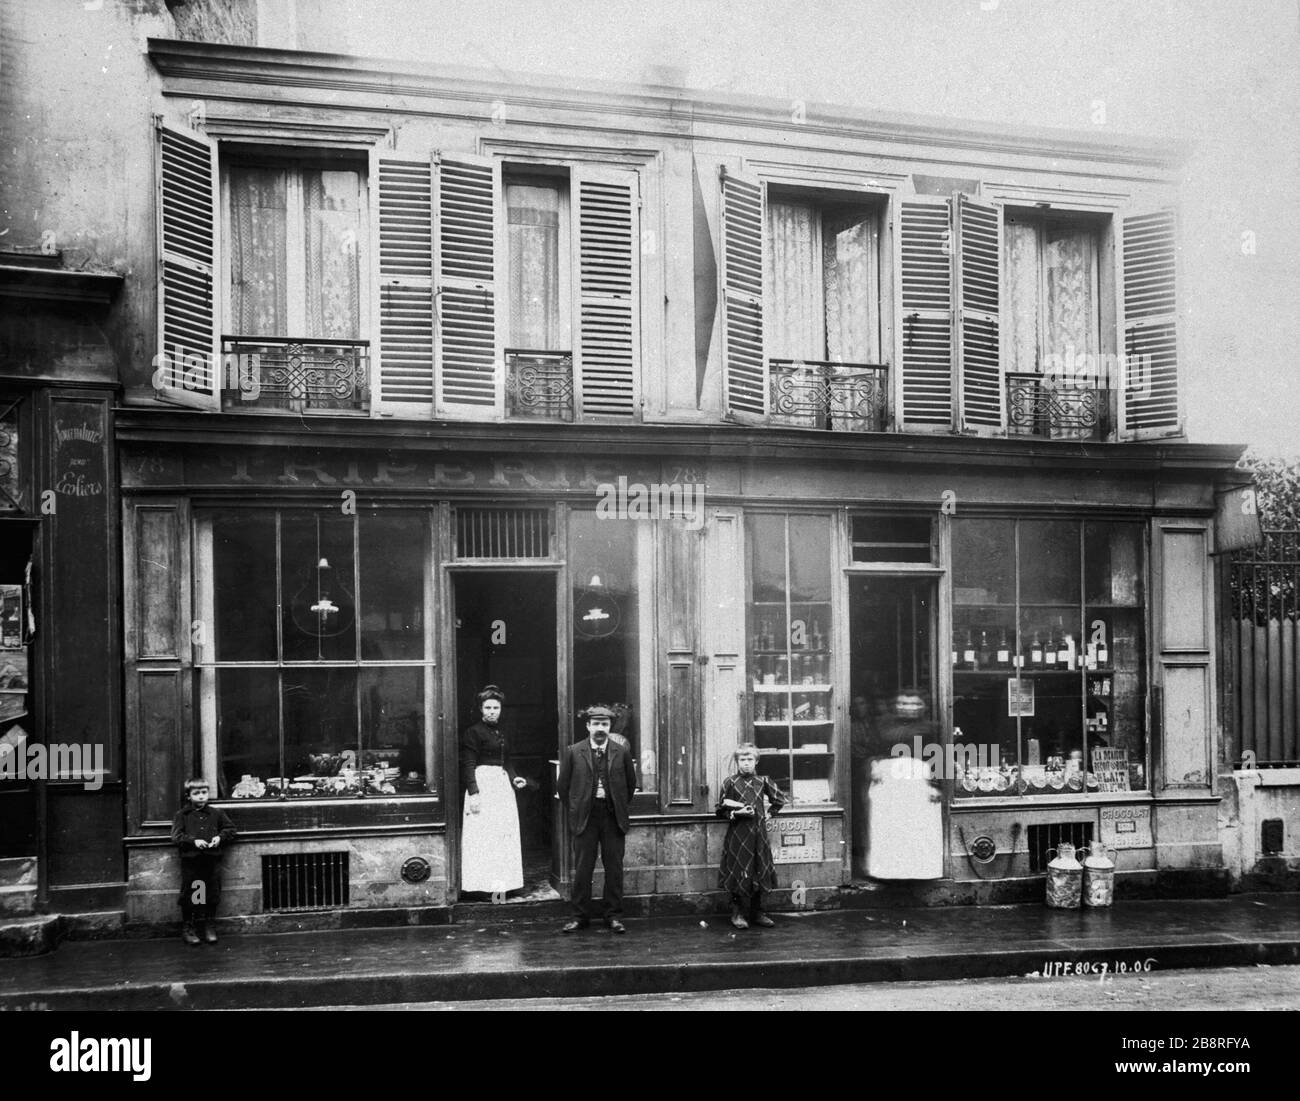 78 RUE DES GRABES-ISSOIRE 78, rue de la Tombe-Issoire. Paris (XIIIème arr.), 1898. Union Photographique Française. Paris, musée Carnavalet. Stockfoto